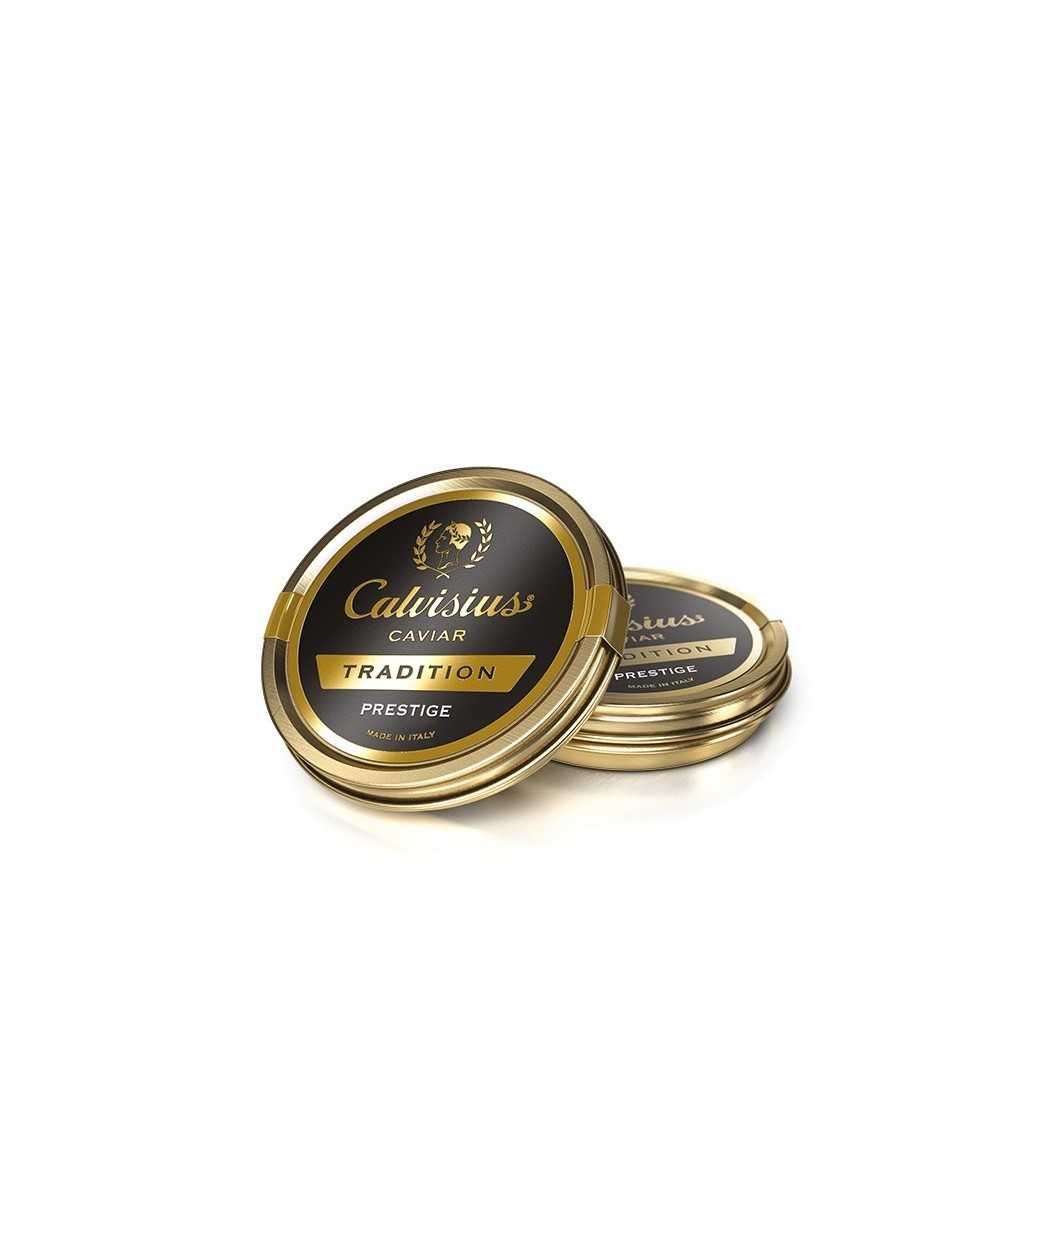 Caviar Calvisius Tradition Prestige boite 10 gr 